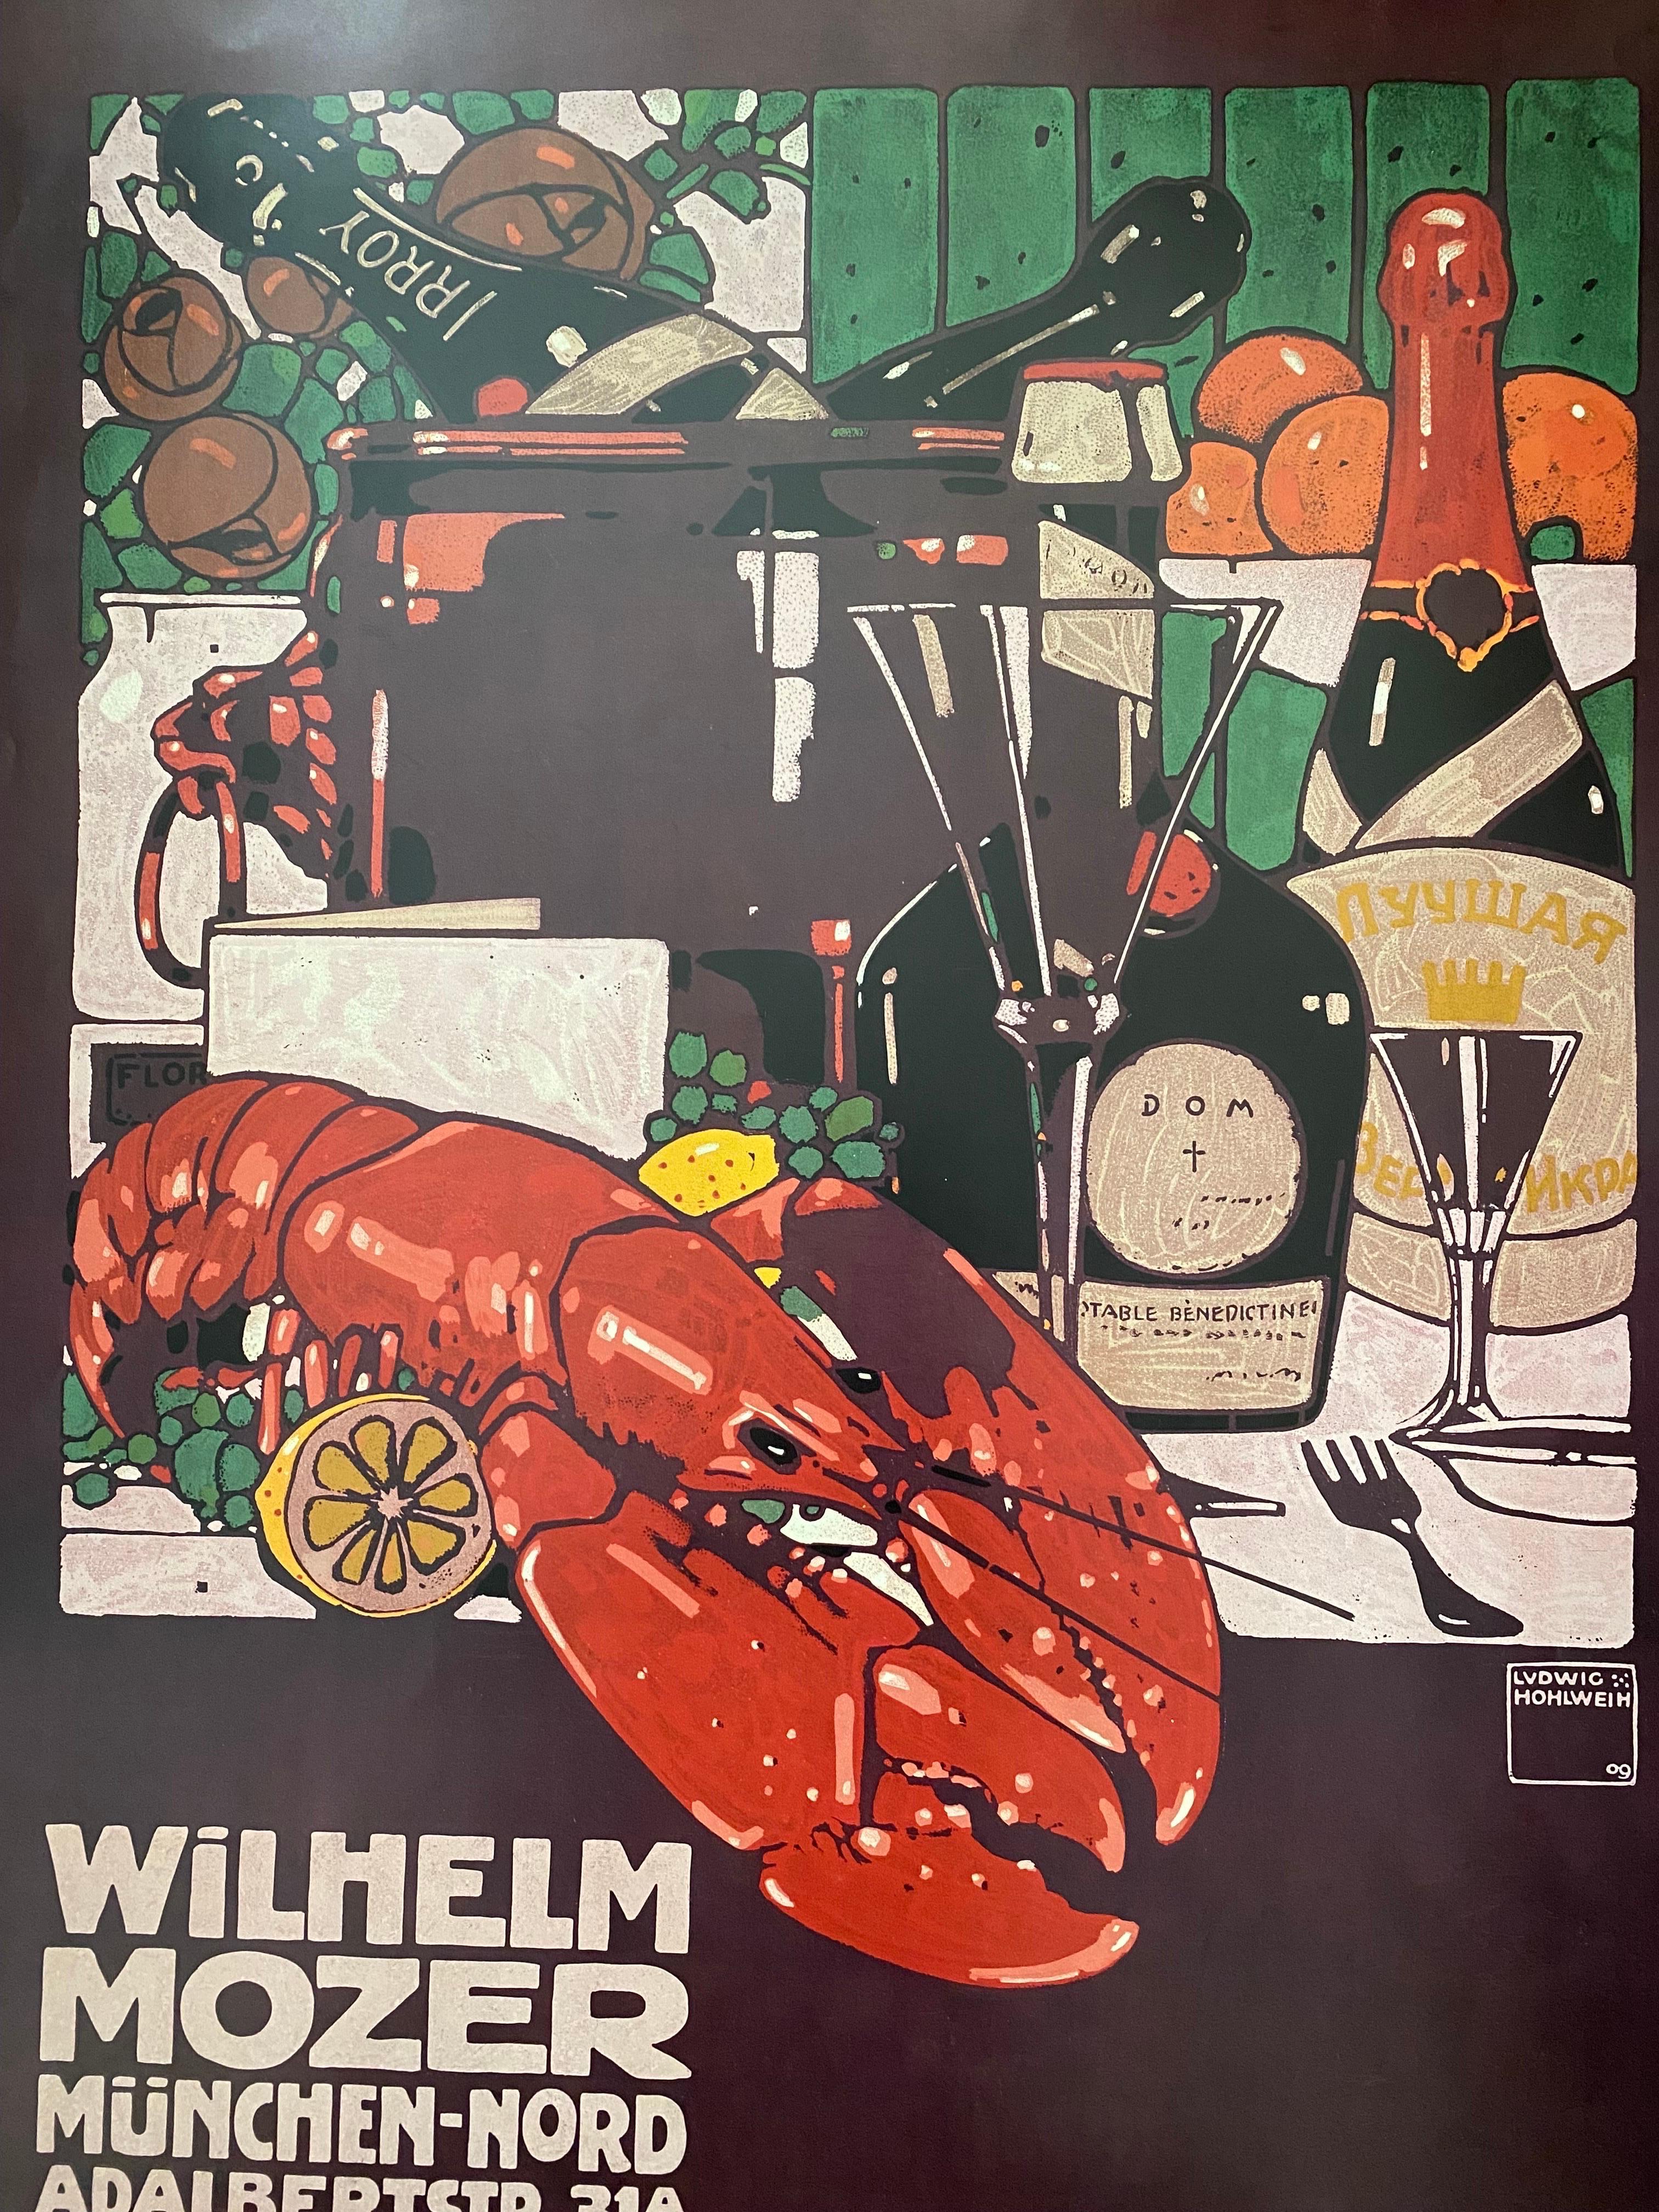 Schöner Druck, entworfen von dem deutschen Künstler Ludwig Hohlwein. Dieses Werbeplakat für das Delikatessengeschäft von Wilhelm Mozer in München wurde ursprünglich 1909 veröffentlicht. Dies ist eine Reproduktion aus dem Jahr 1985 für das Museum Of